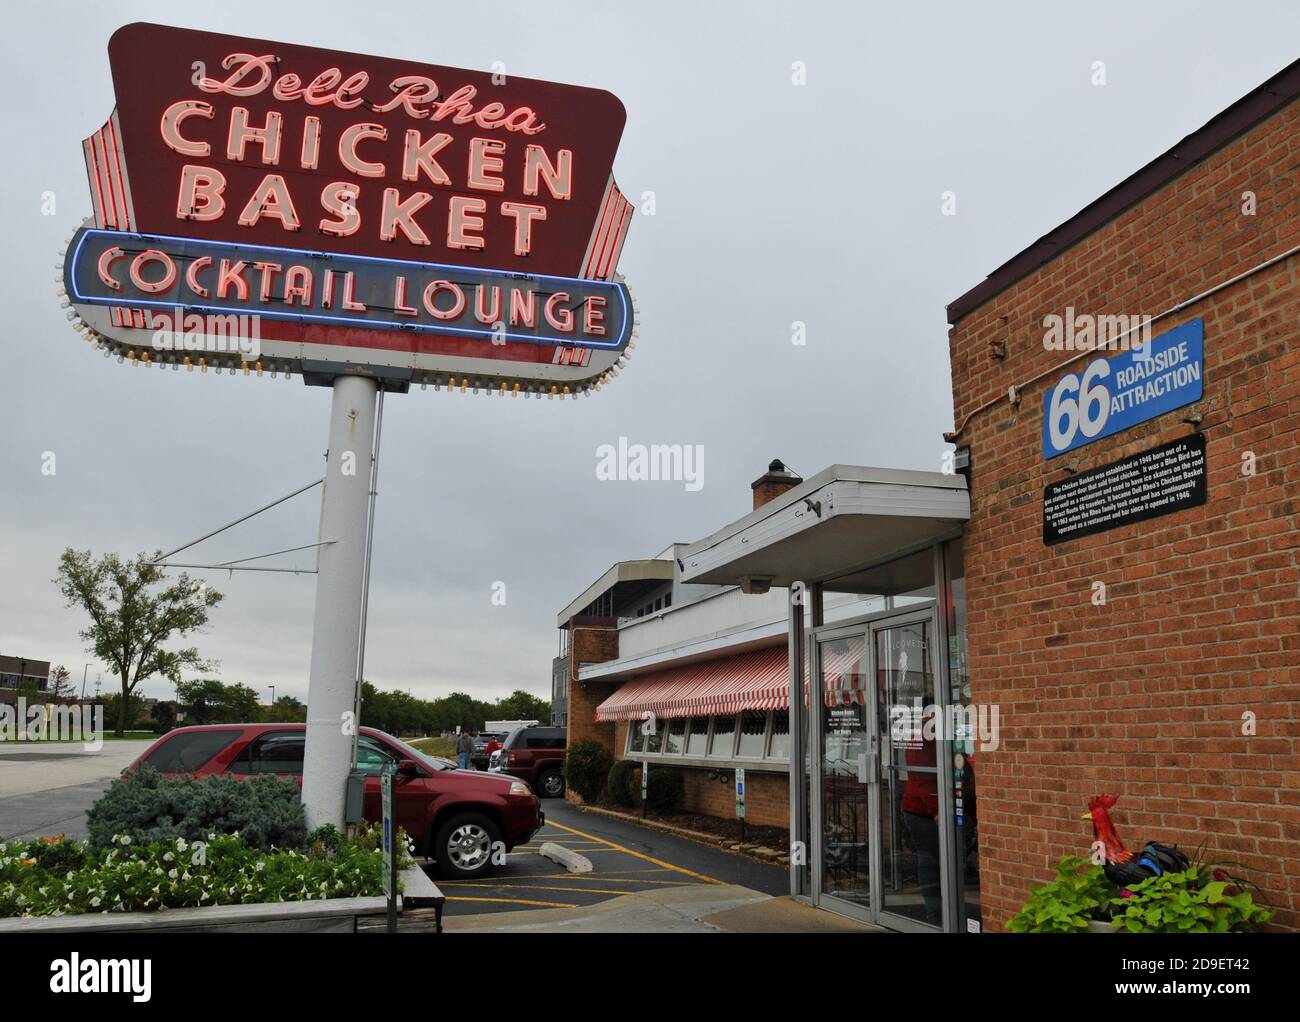 Le panier de poulet de Dell Rhea est un point de repère de la route 66 à Willowbrook, Illinois, qui sert des clients depuis son emplacement actuel depuis 1946. Banque D'Images